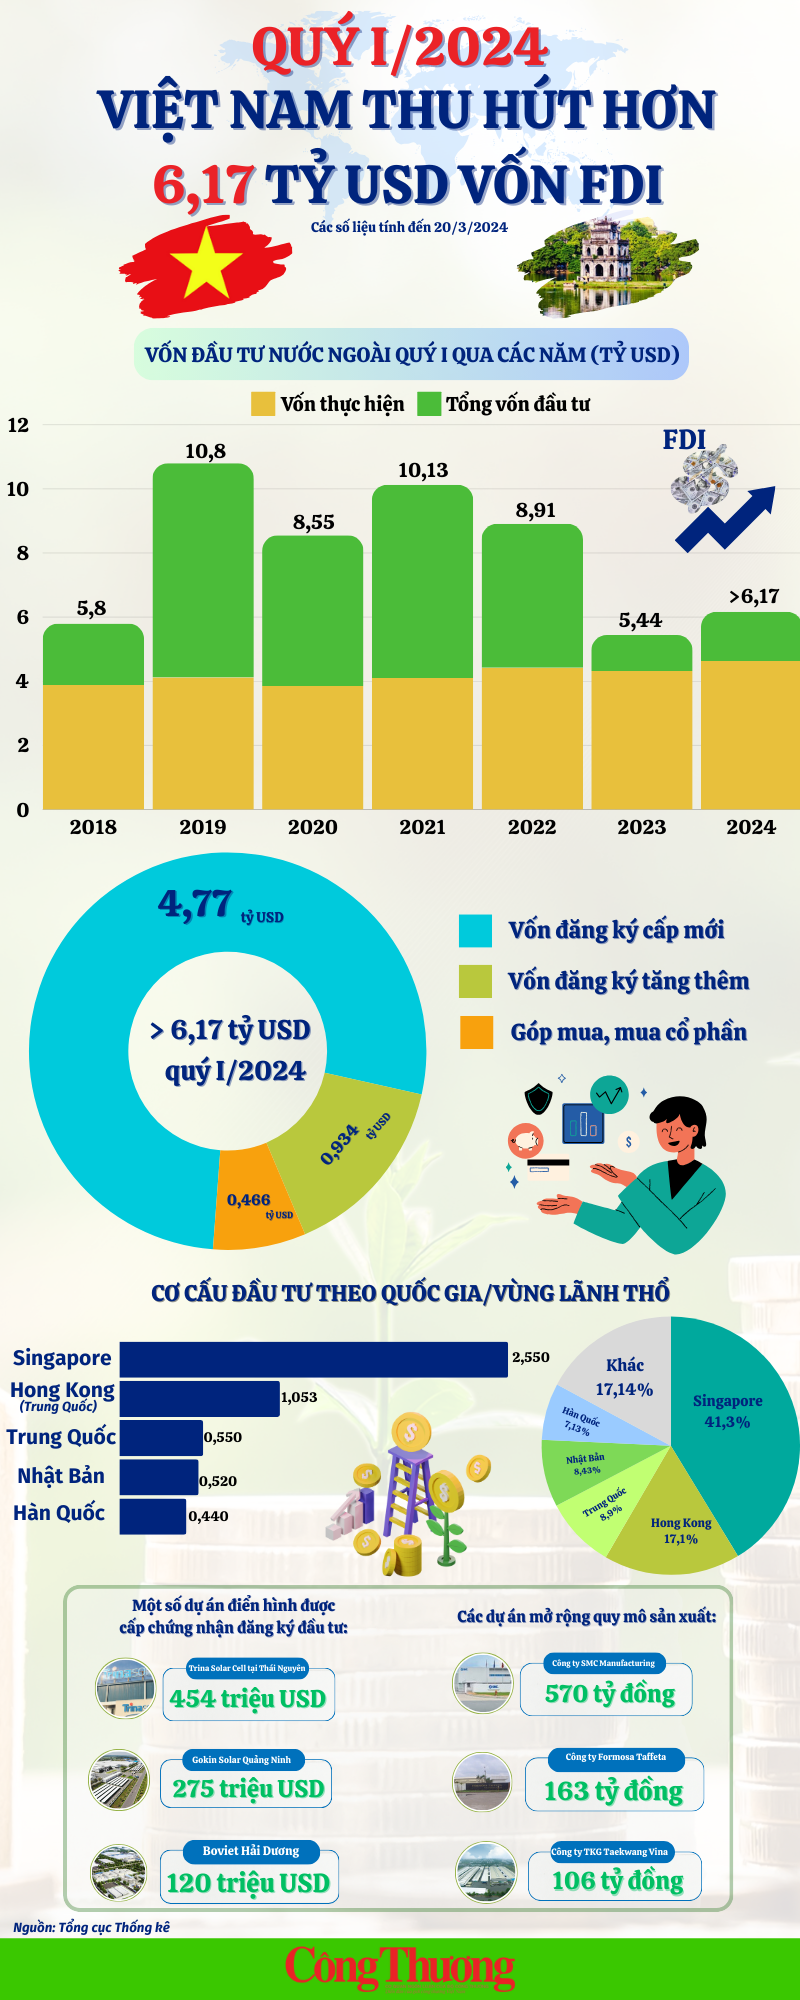 Infographic: Việt Nam thu hút hơn 6,17 tỷ USD vốn FDI trong quý I/2024 - Ảnh 1.